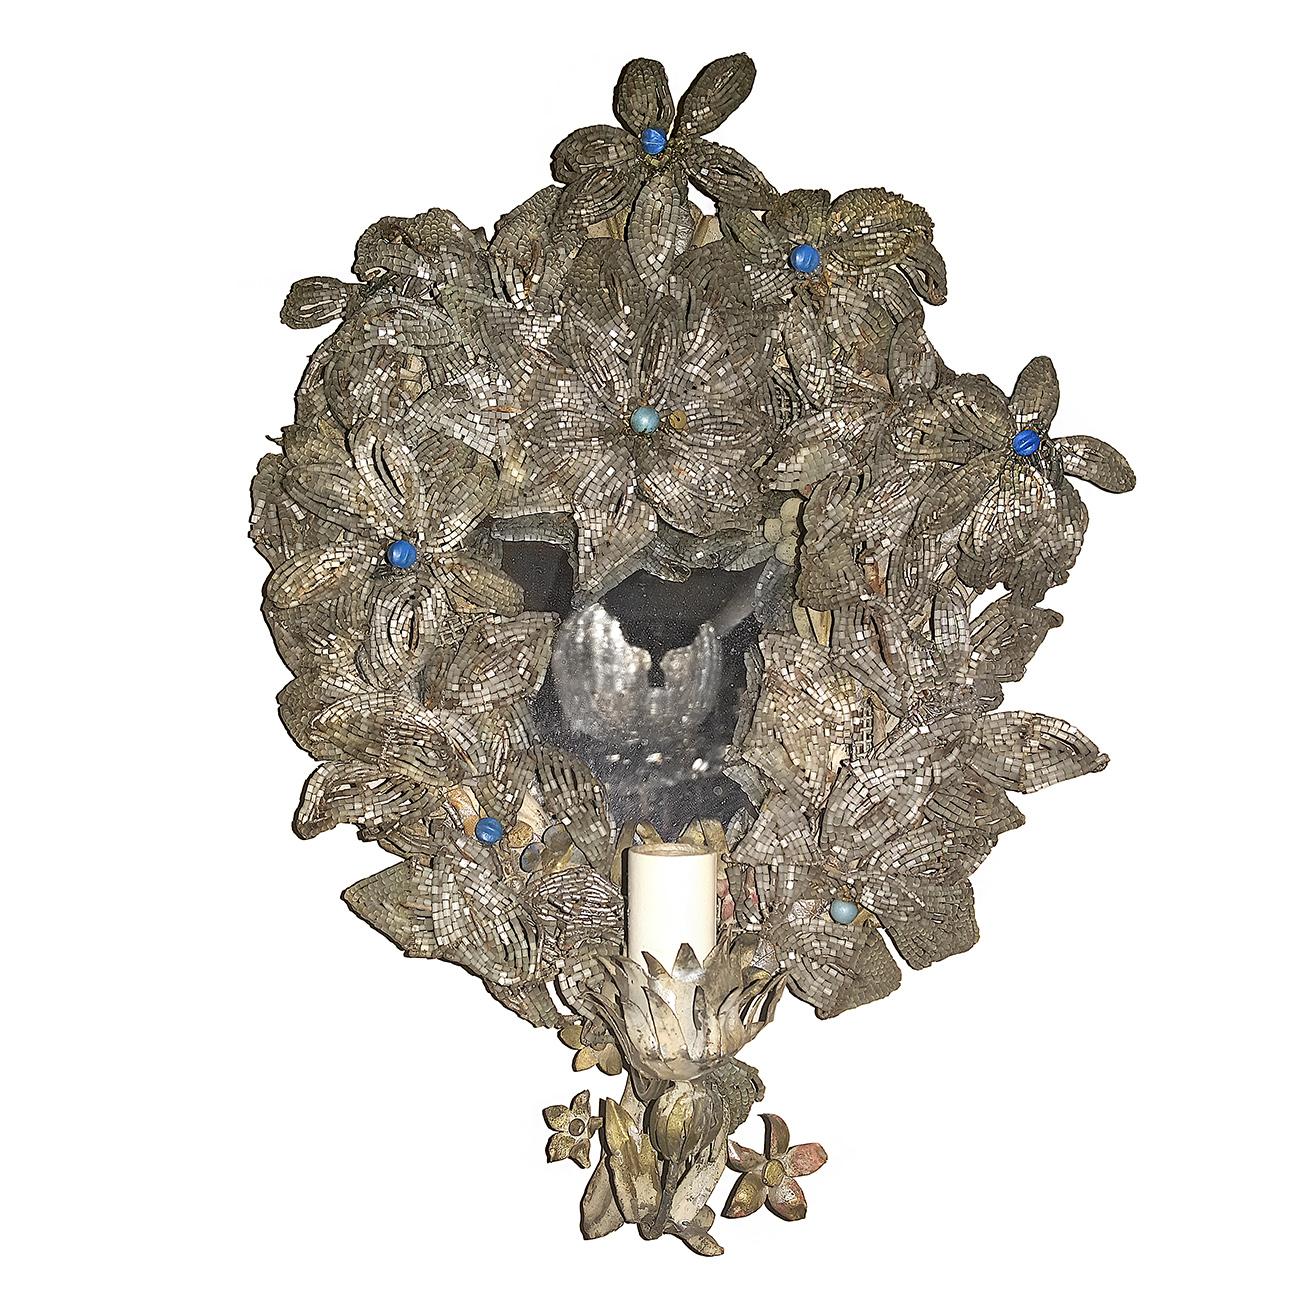 Paar italienische einflammige Perlenleuchter mit Blumen- und Blattwerkmotiv aus dem 19. Jahrhundert mit Spiegelrückwand.

Abmessungen:
Höhe: 14